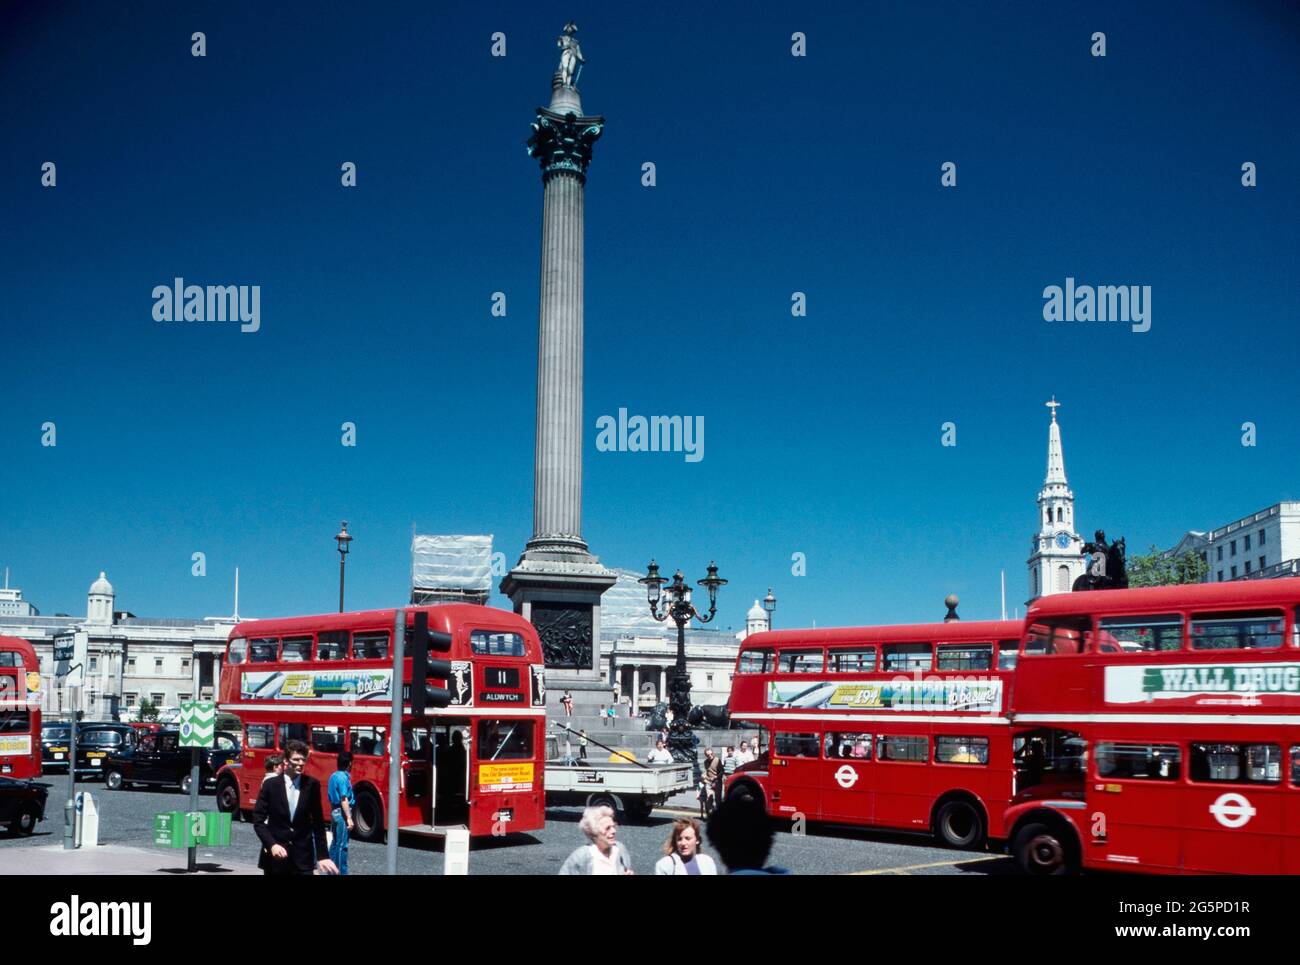 Autobus a due piani rossi lungo Trafalgar Square e la colonna di Nelson, Londra, Inghilterra, Regno Unito. Circa1980 Foto Stock